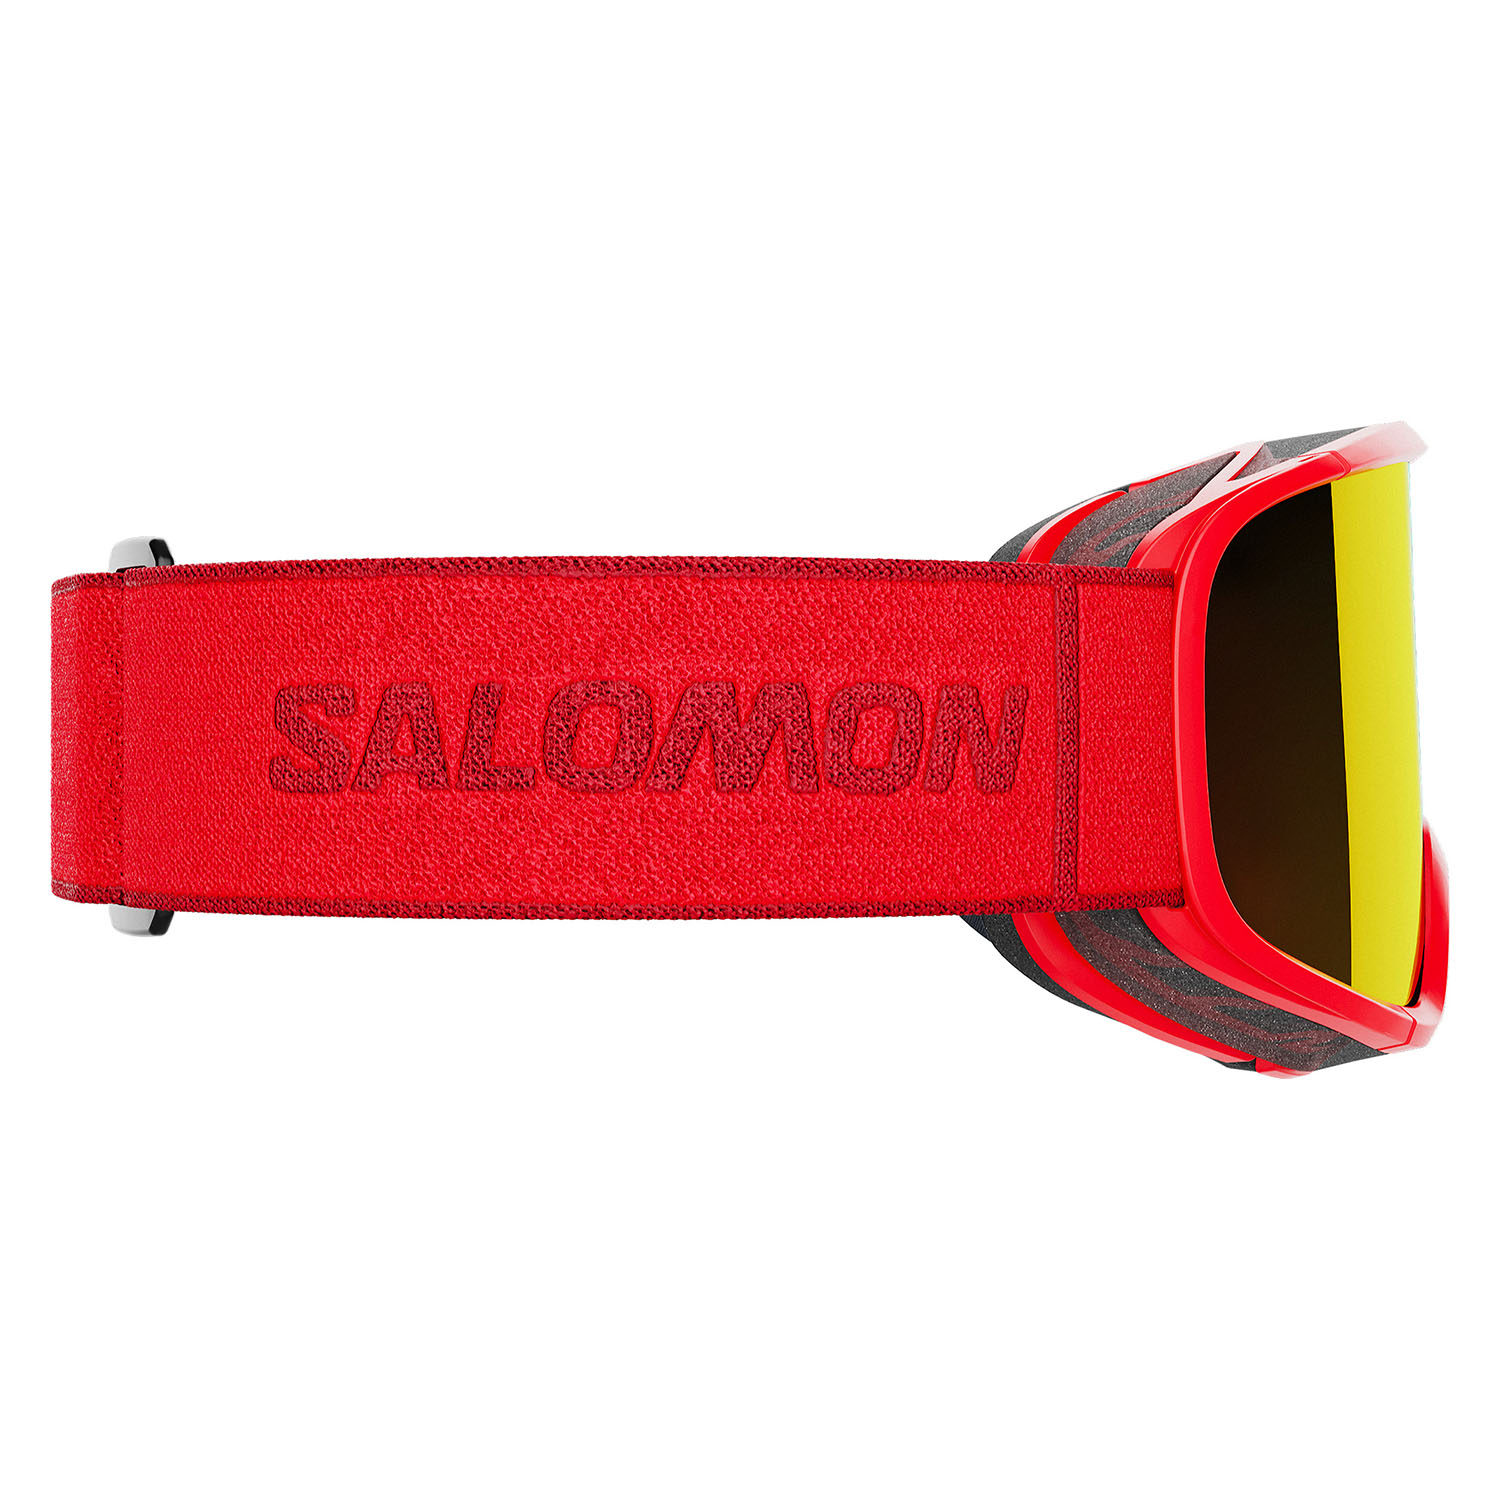 Очки горнолыжные SALOMON Aksium 2.0 Red